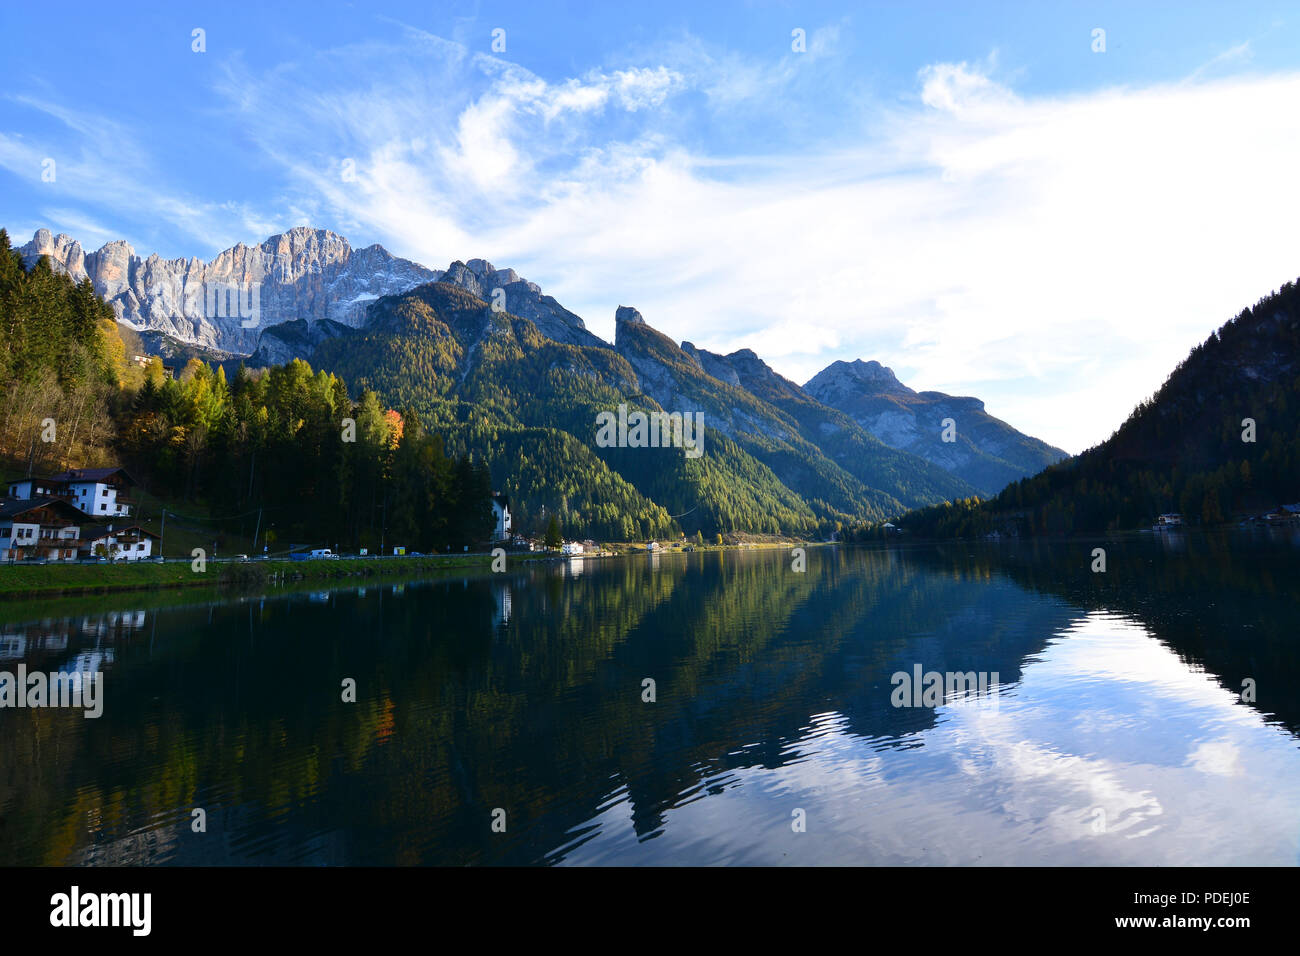 a beautiful autumn on the Italian Alps Stock Photo